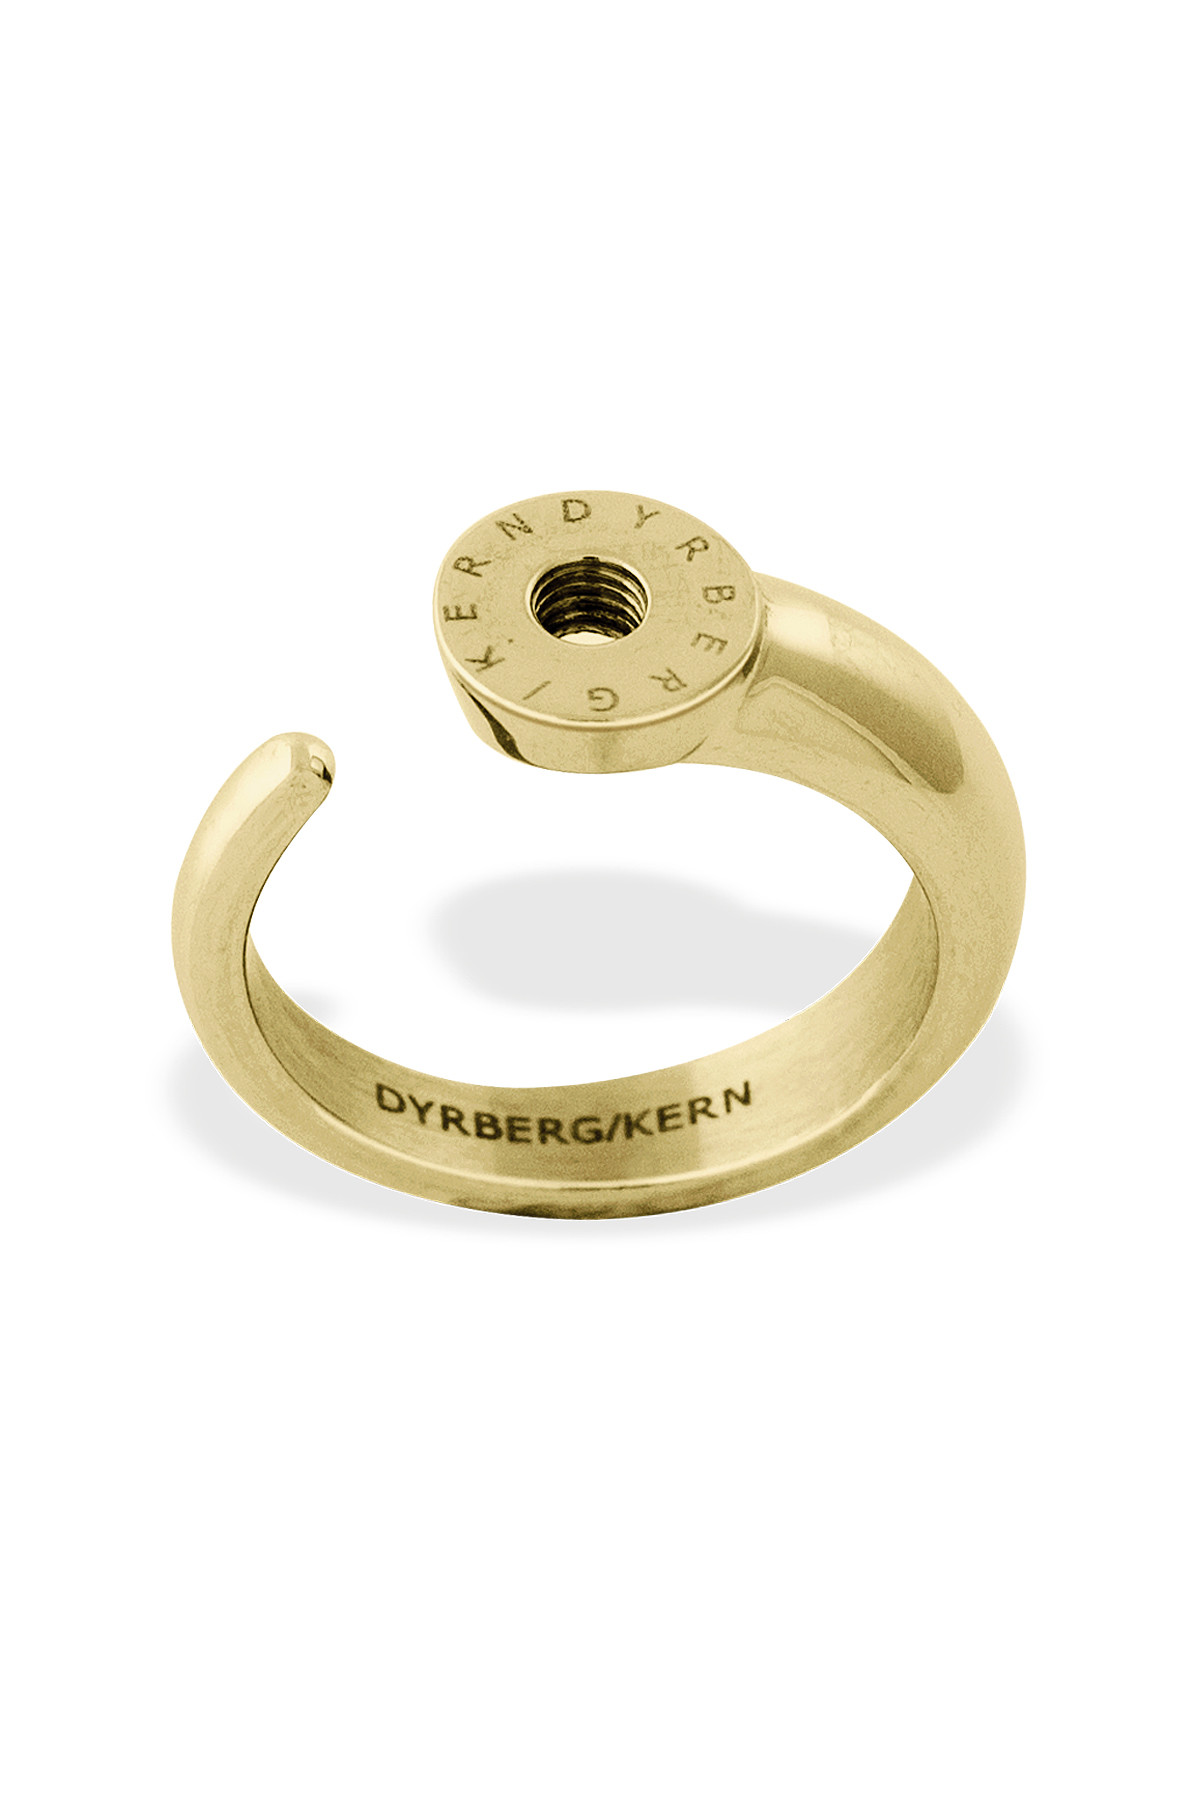 Billede af Dyrberg/kern Ring Ring, Farve: Guld, Størrelse: III/57, Dame